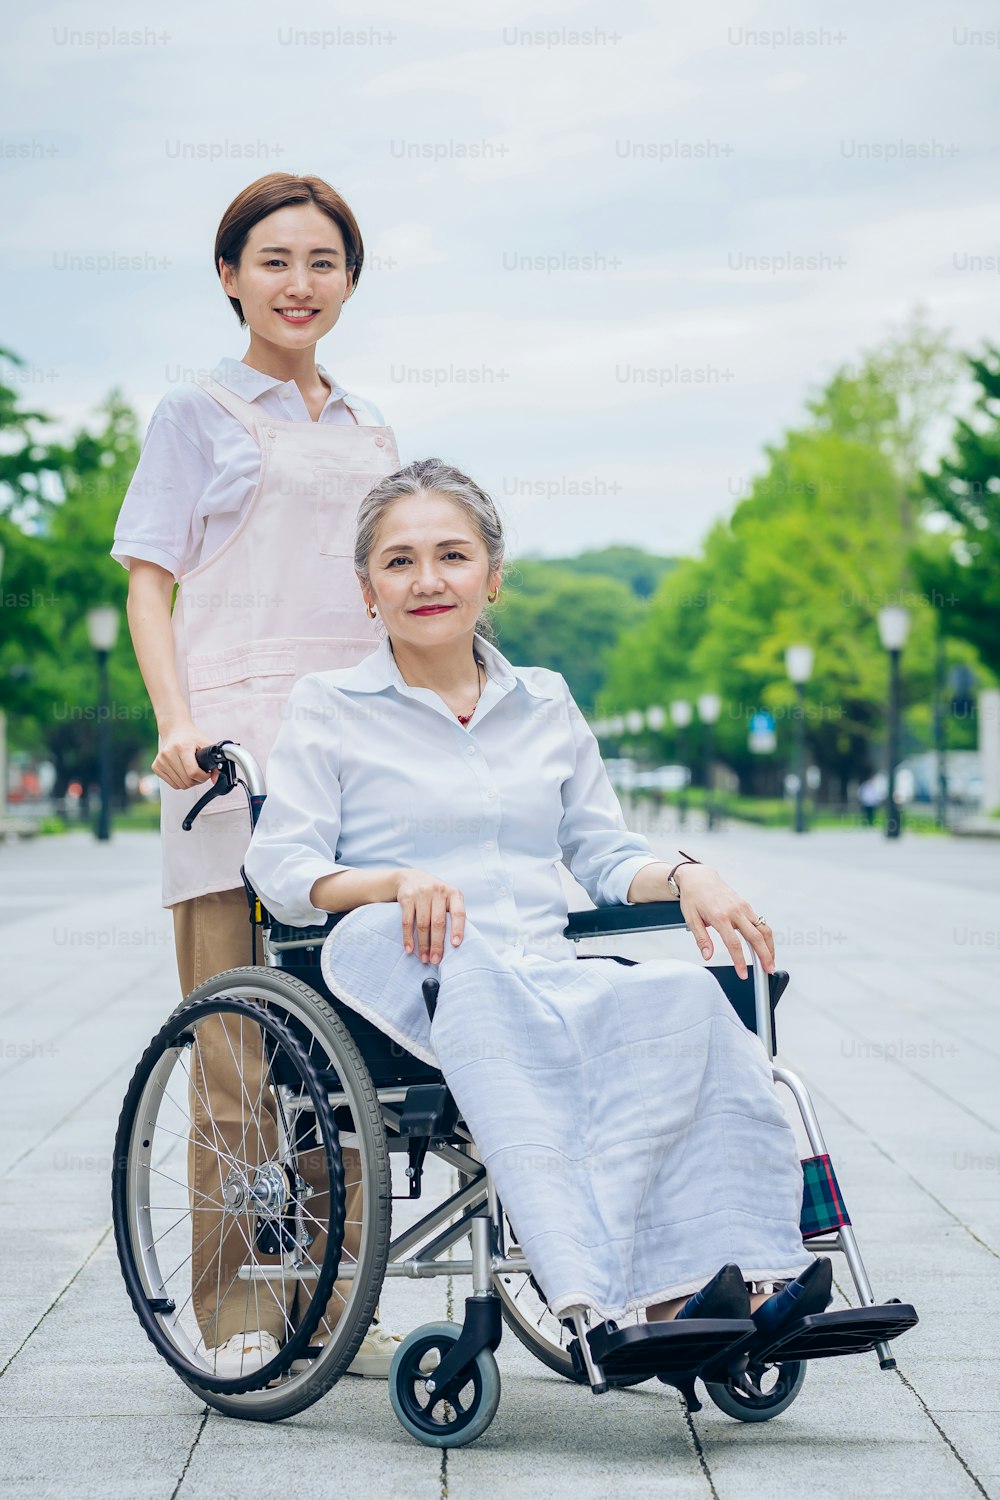 휠체어를 탄 여성과 앞치마를 두른 젊은 여성이 야외를 돌보고 있다